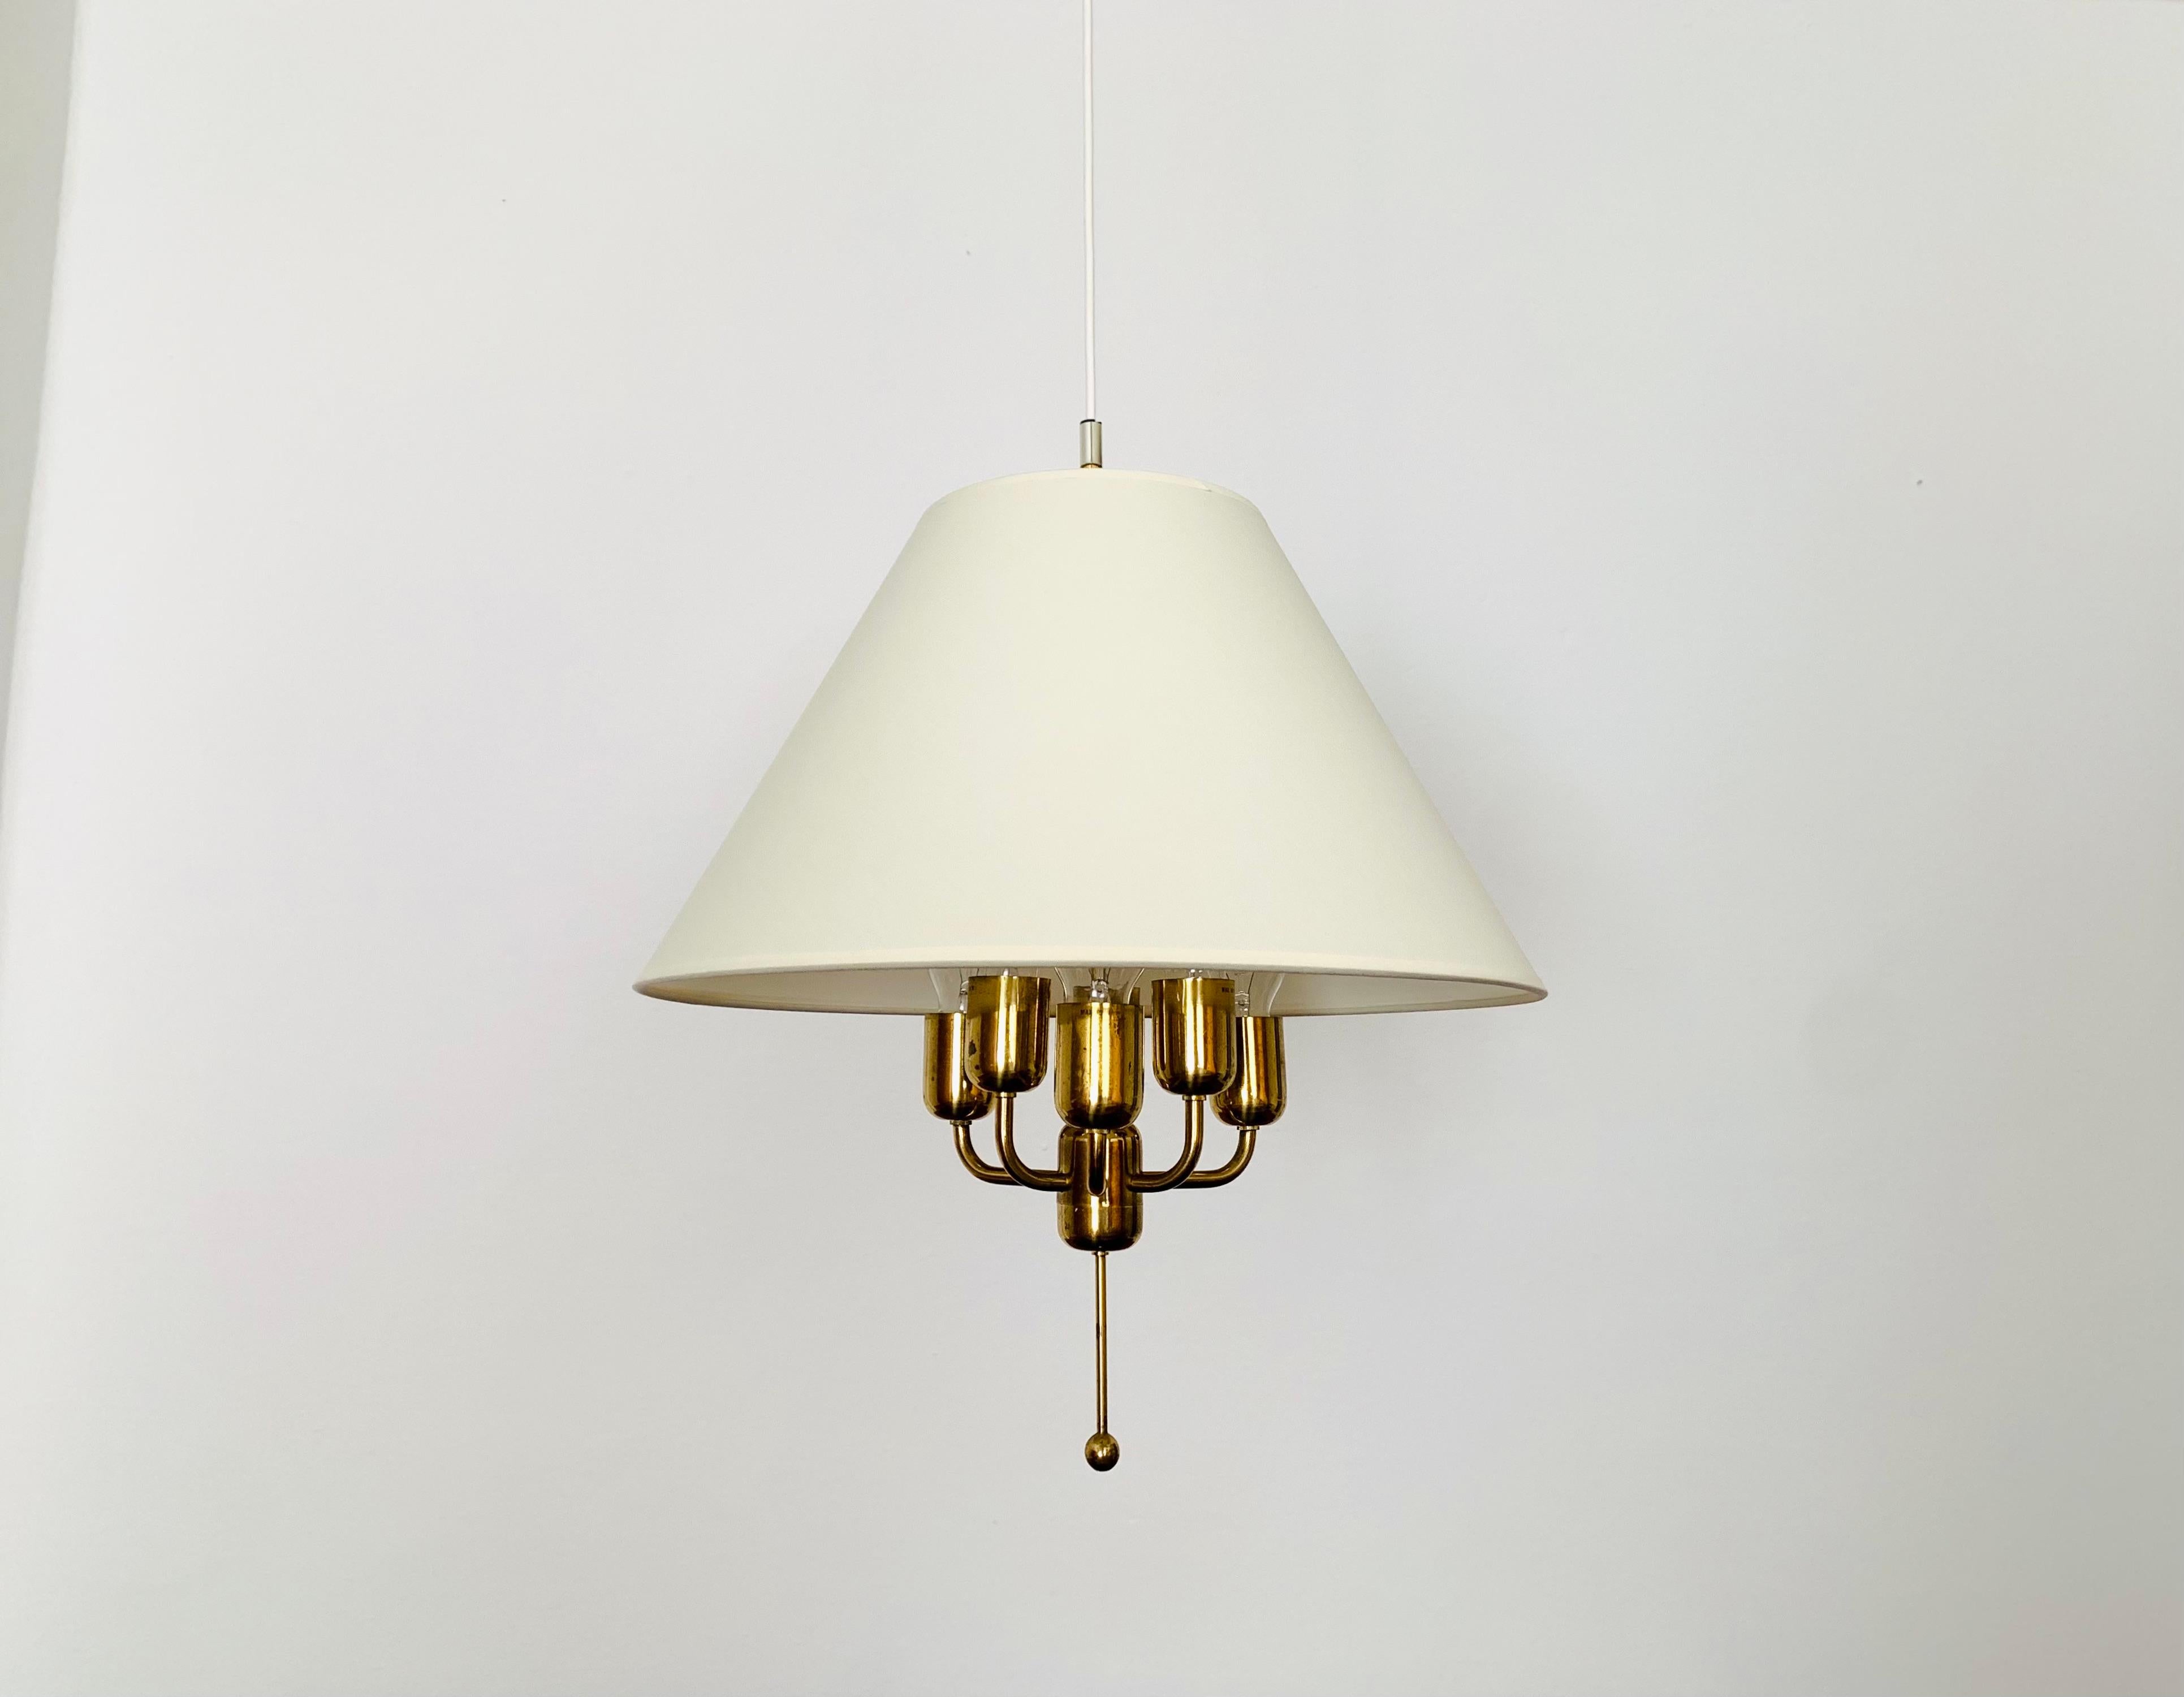 Merveilleuse lampe suspendue en laiton des années 1960.
La lampe avec l'abat-jour flottant est un véritable atout et un favori absolu pour chaque maison.
Une lumière très agréable et chaleureuse est créée.

Condit :

Très bon état vintage avec de